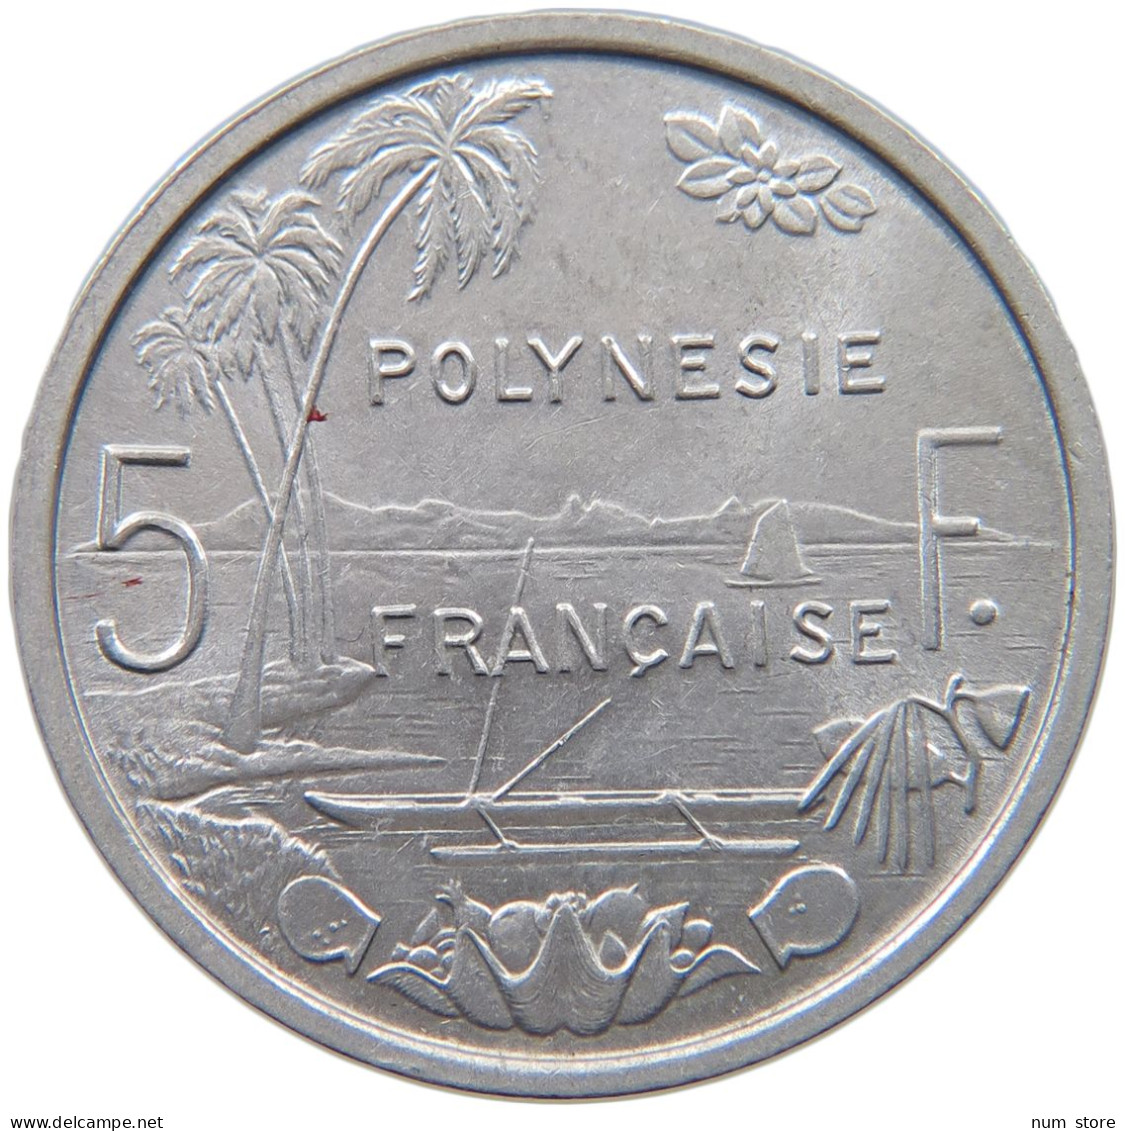 POLYNESIA 5 FRANCS 1965  #c001 0279 - Polynésie Française